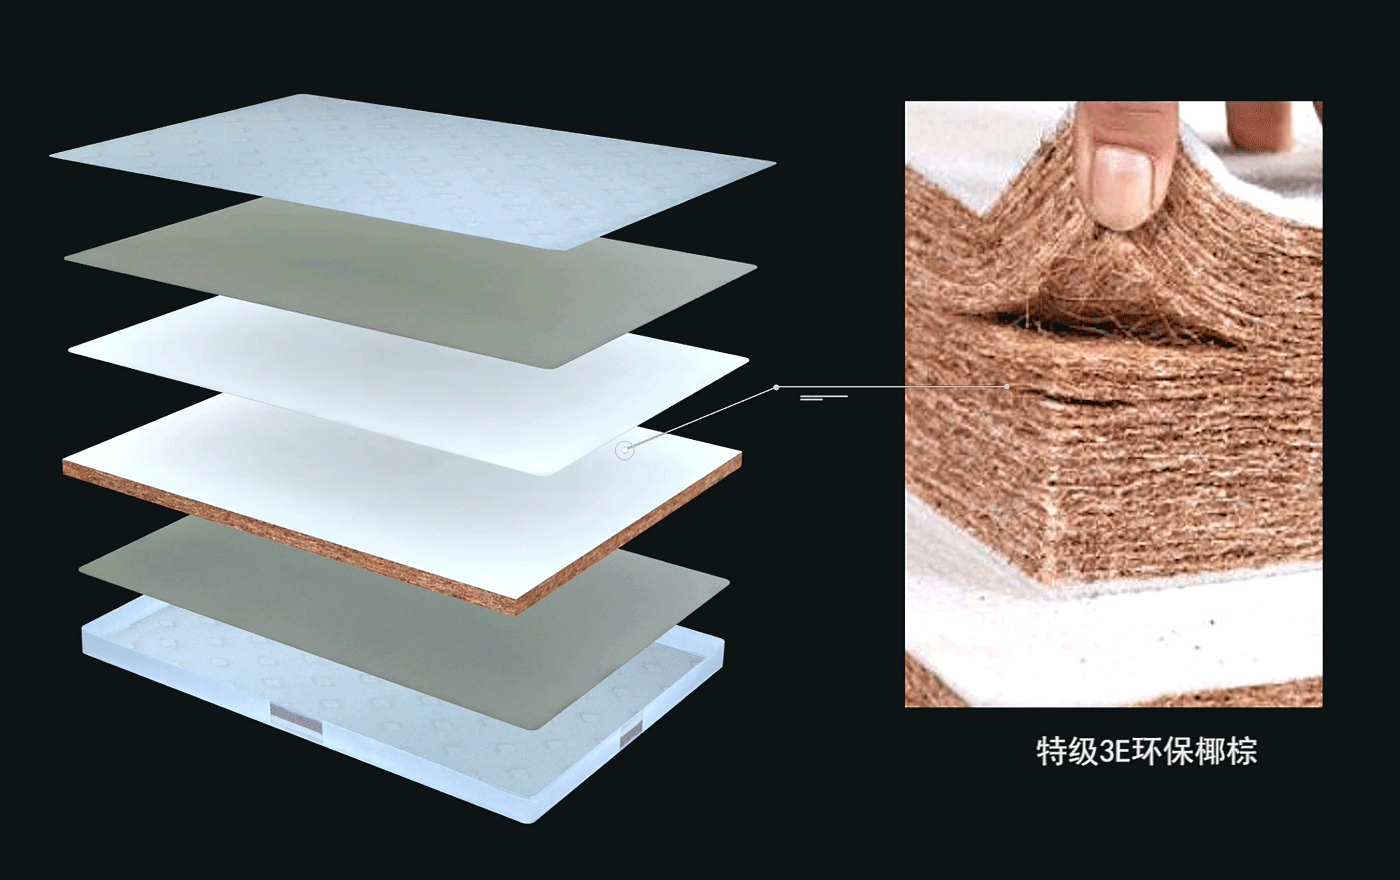 吉思亚麻乳胶奢华床垫系列J-10HBR--特级3E环保椰棕